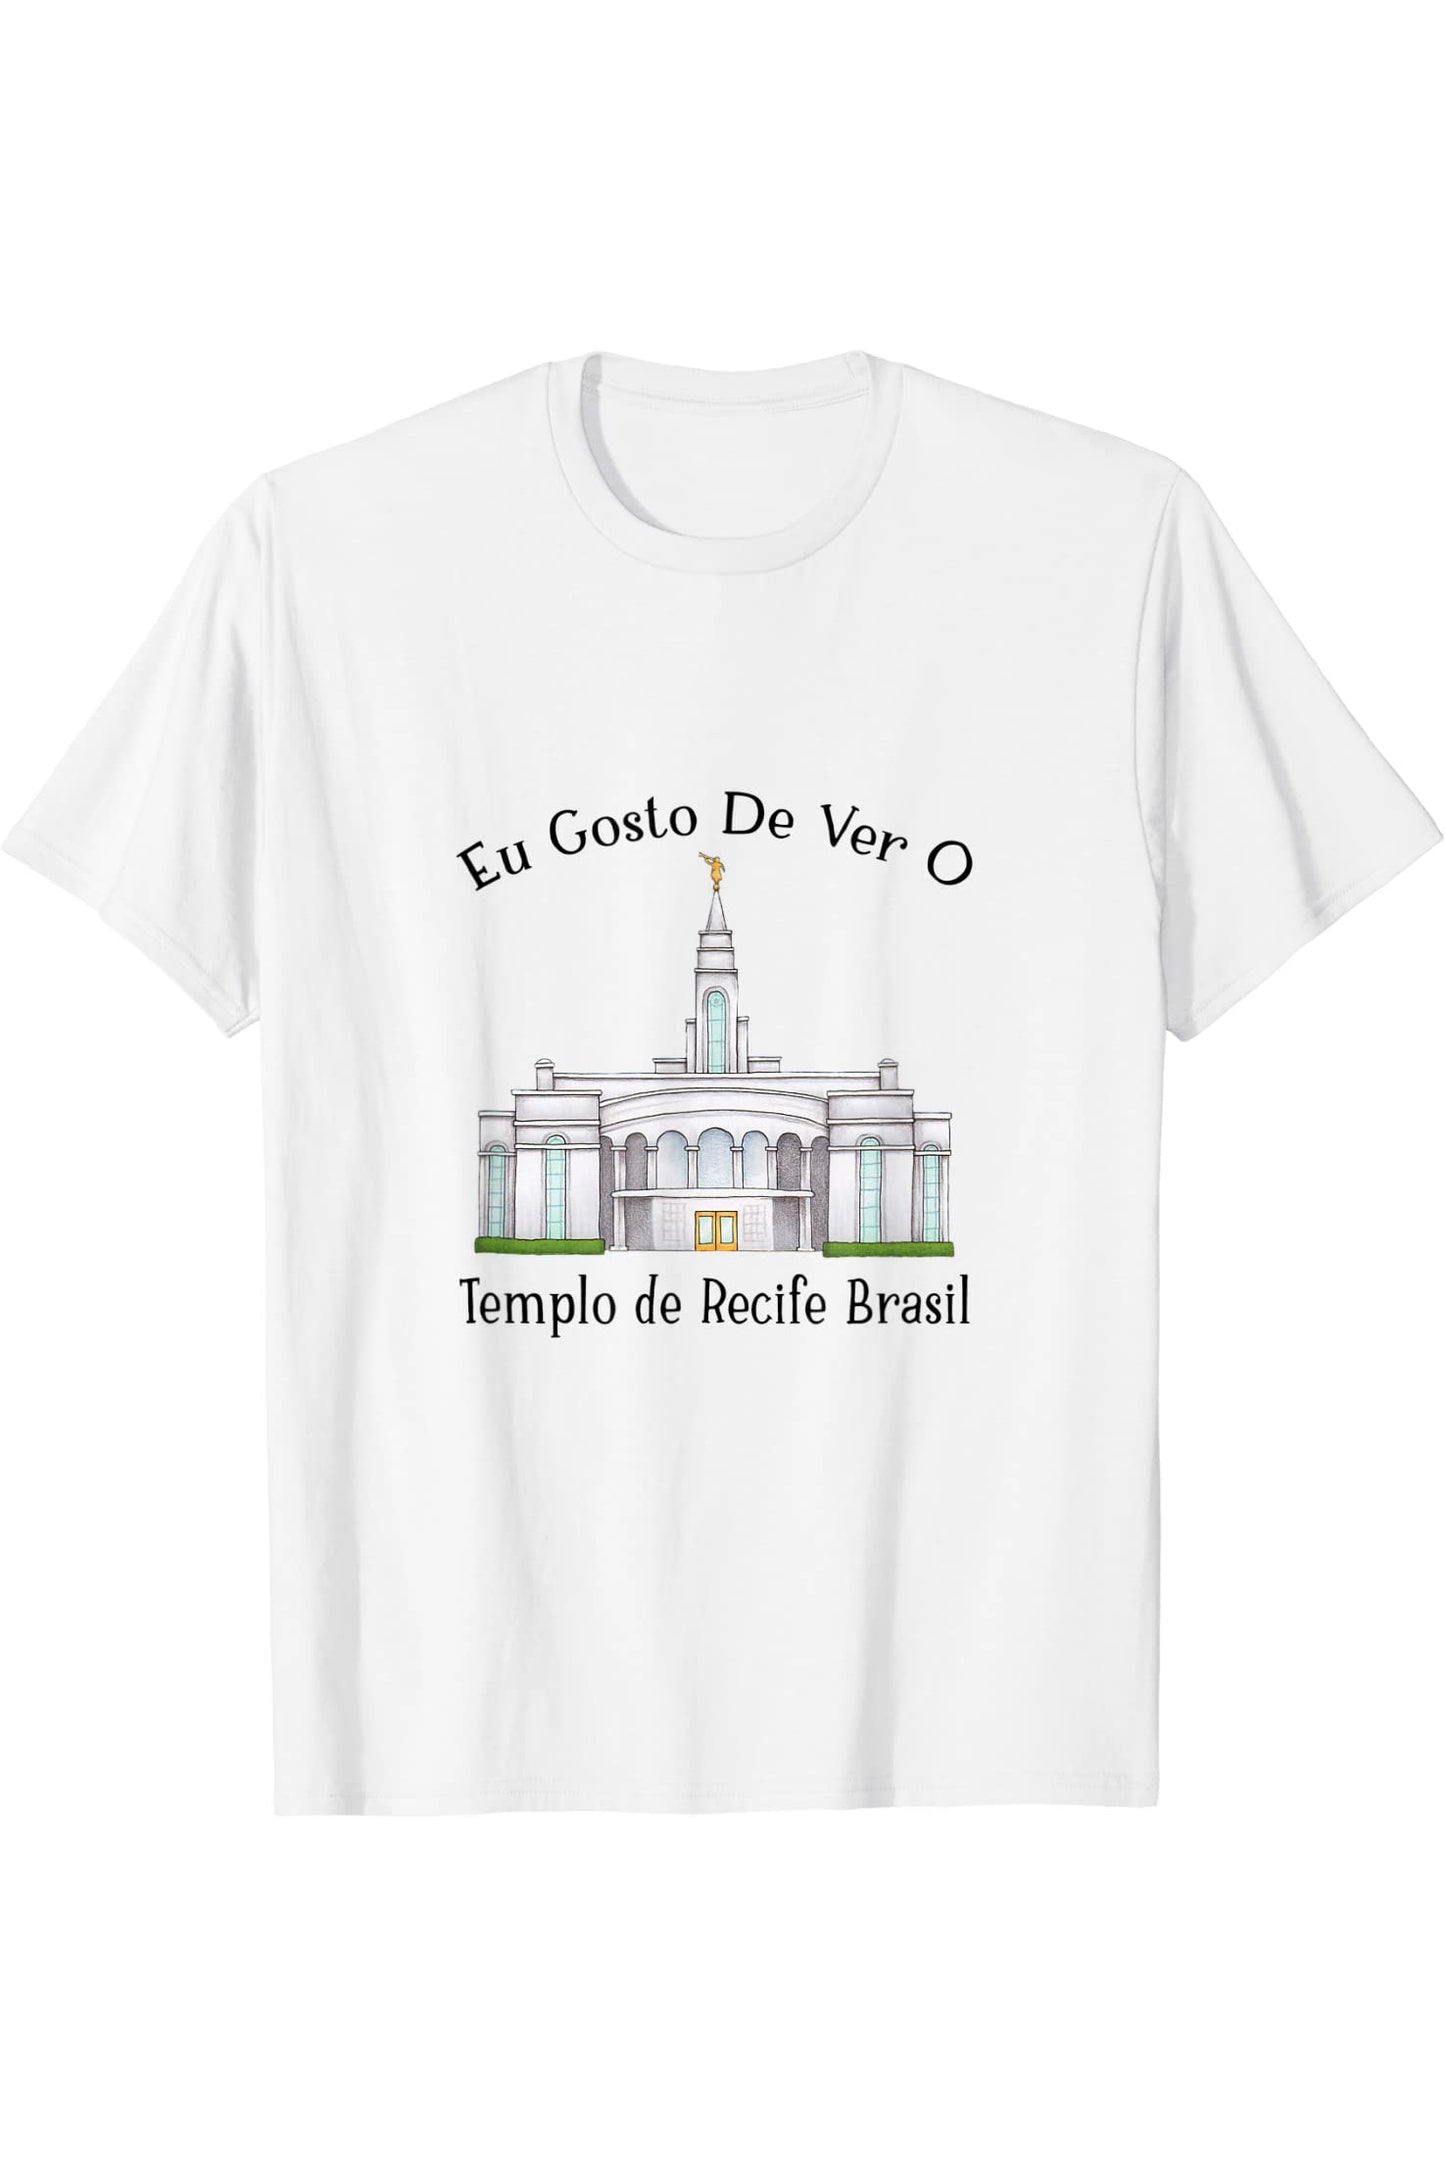 Templo de Manaus Brasil T-Shirt - Happy Style (Portuguese) US